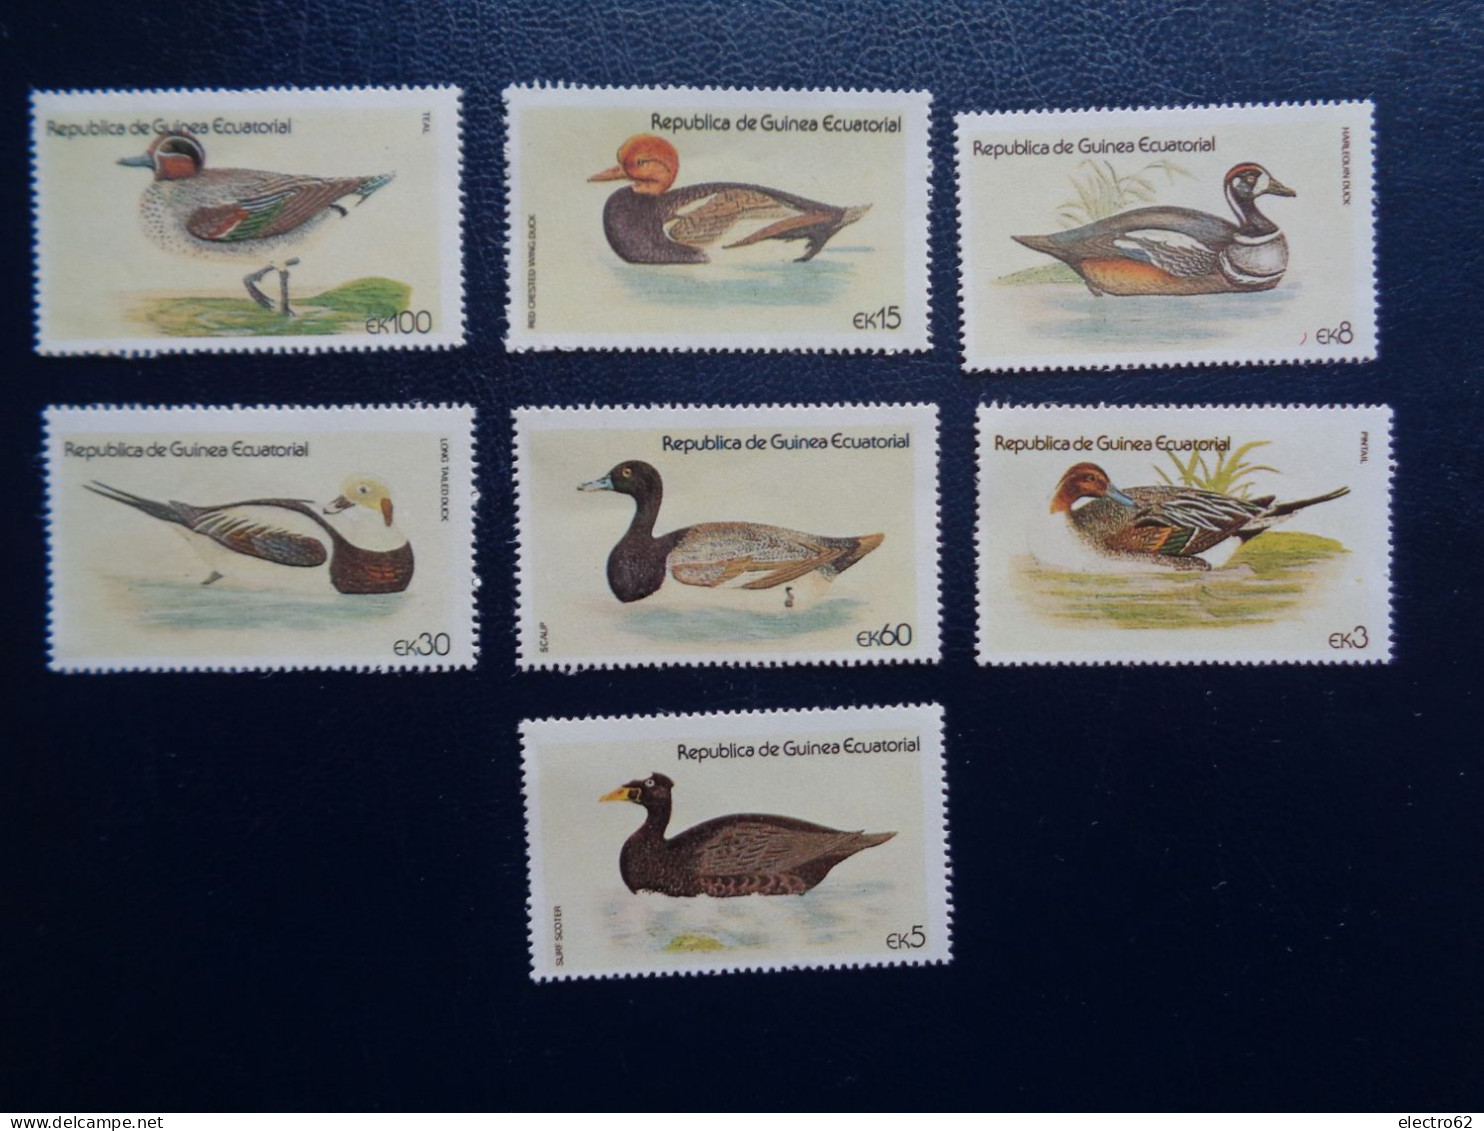 Guinée Equatoriale Canard Duck Ente Pato Anatra Eend Giappone And Guinea Ecuatorial - Anatre